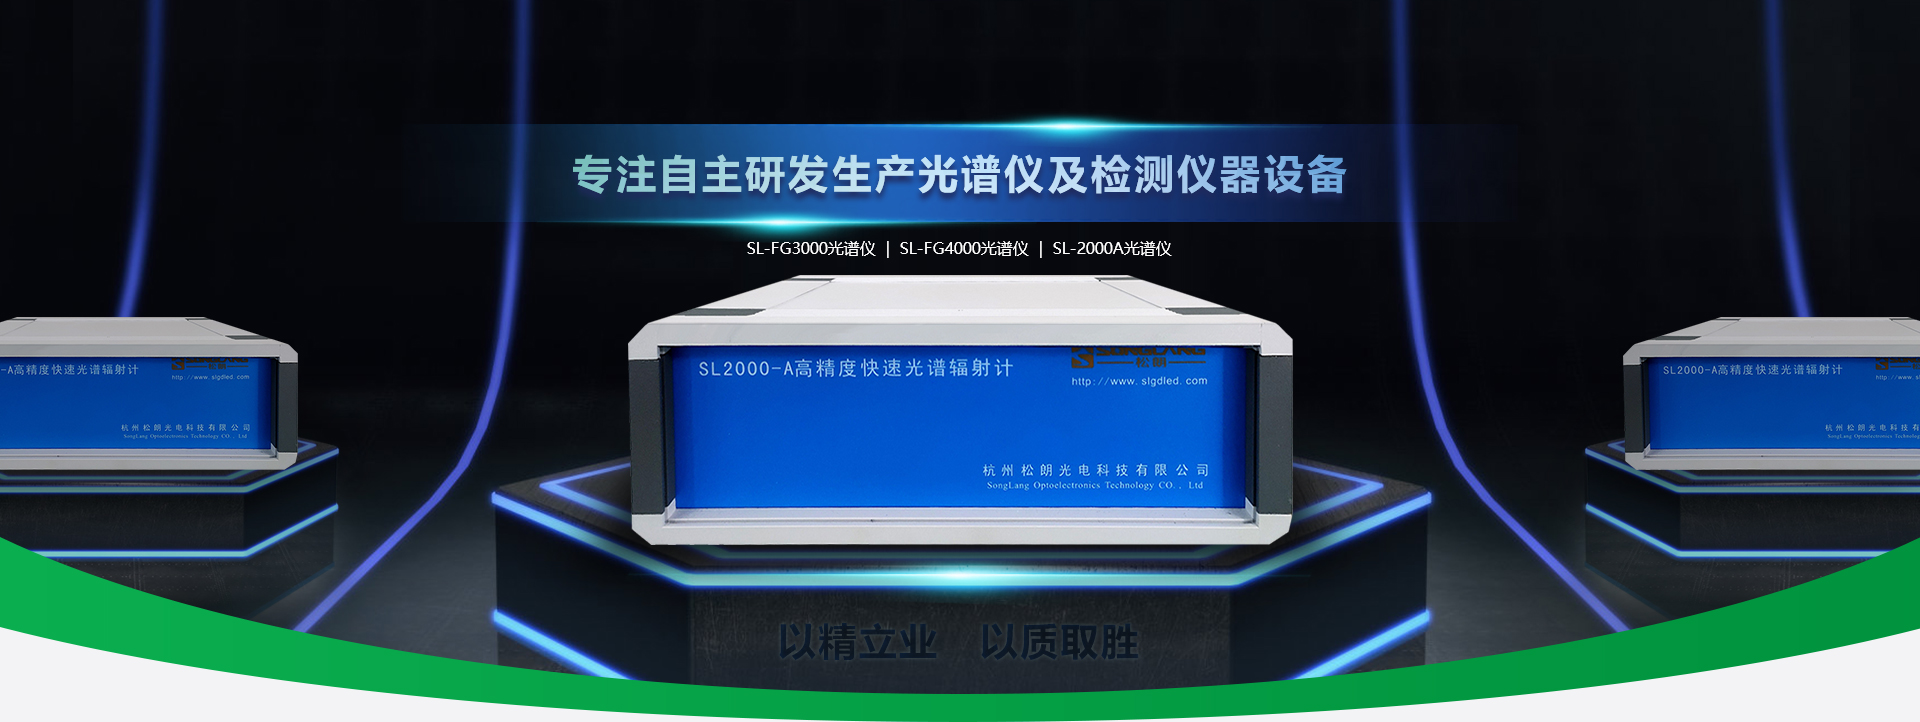 杭州松朗光电主营功率计,标准光源,辐照度等仪器设备.